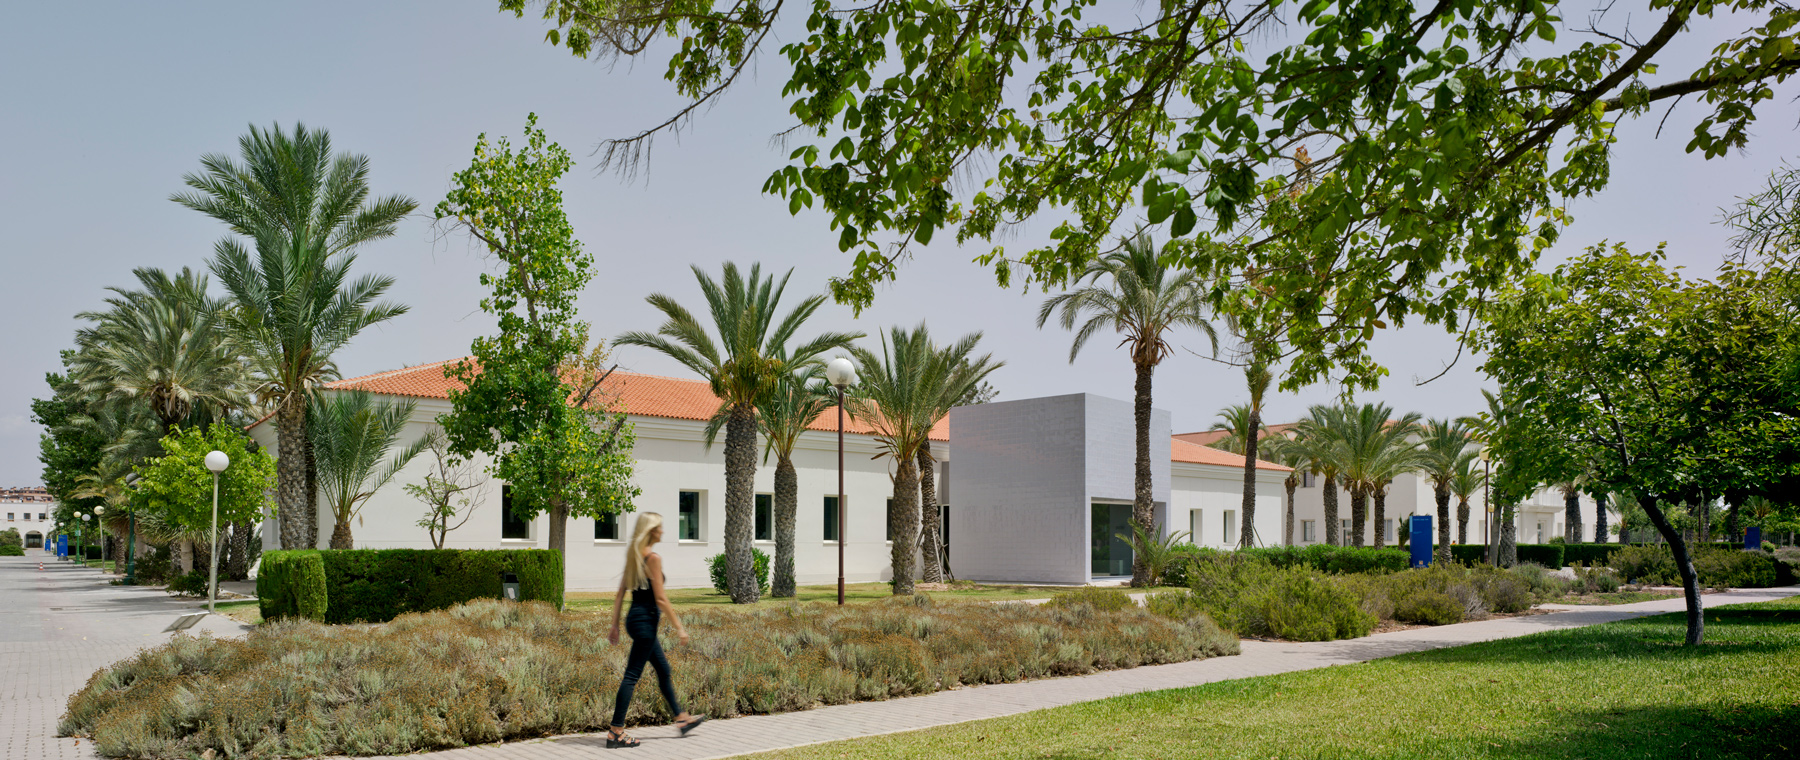 Sede de Relaciones Internacionales de la Universidad de Alicante  International Studies Association’s Headquarters of the University of Alicante